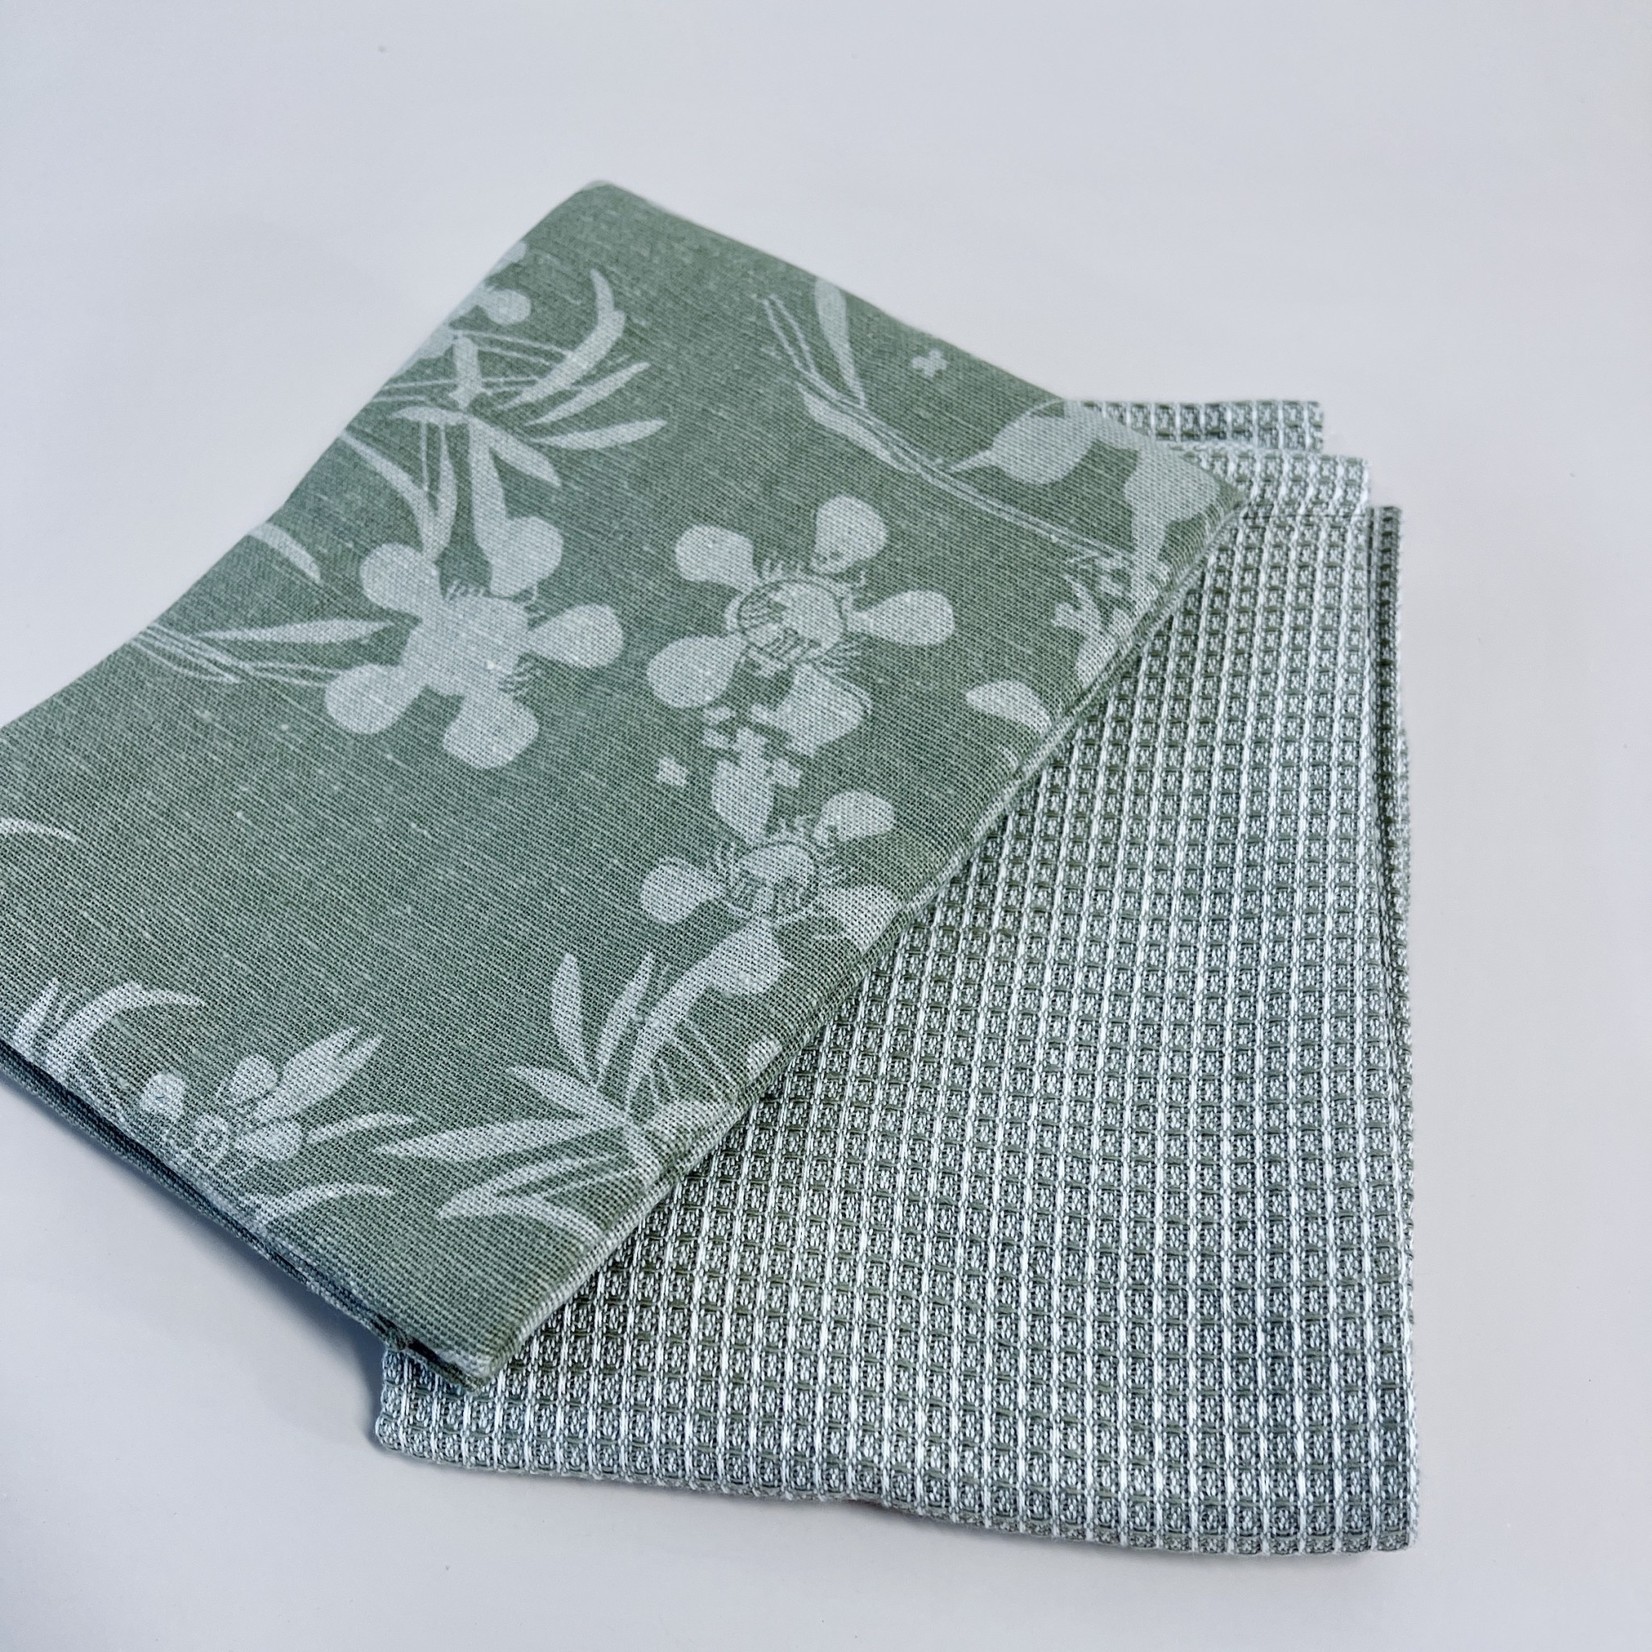 Raine & Humble Myrtle Tea Towel set of 2